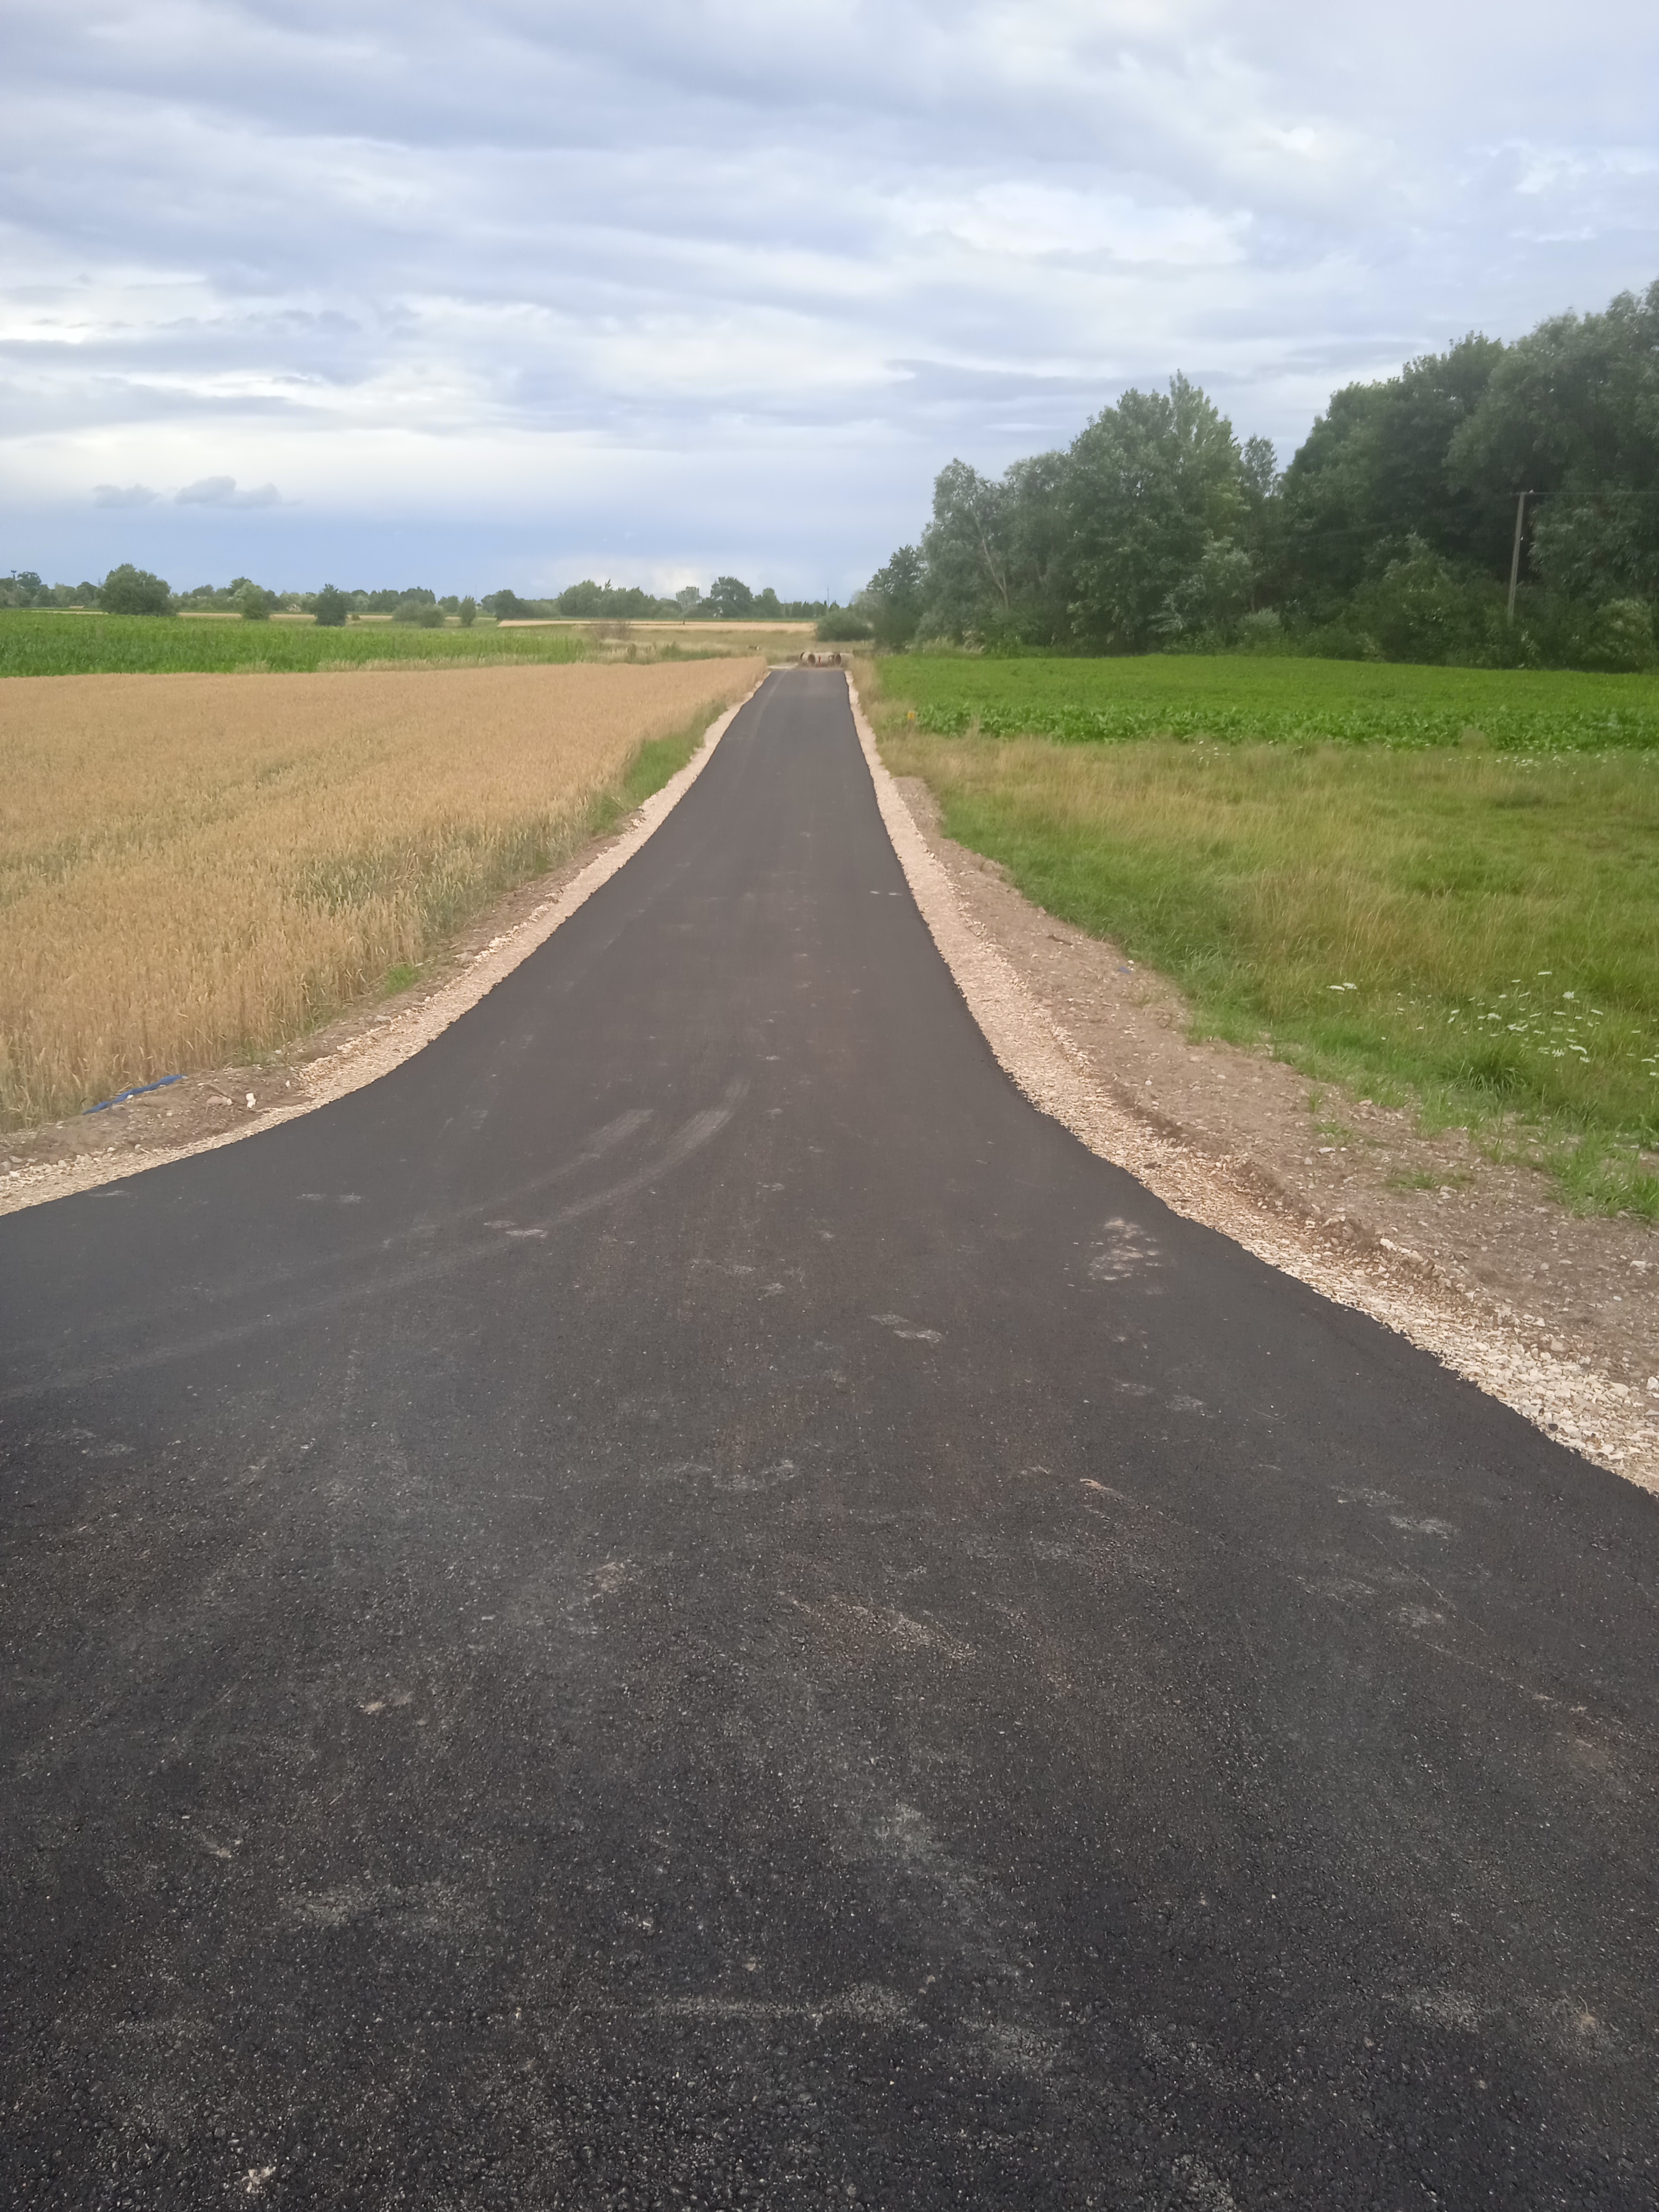 Zdjęcie przedstawia drogę wyremontowaną w ramach dofinansowania z Polskiego Ładu edycja 1